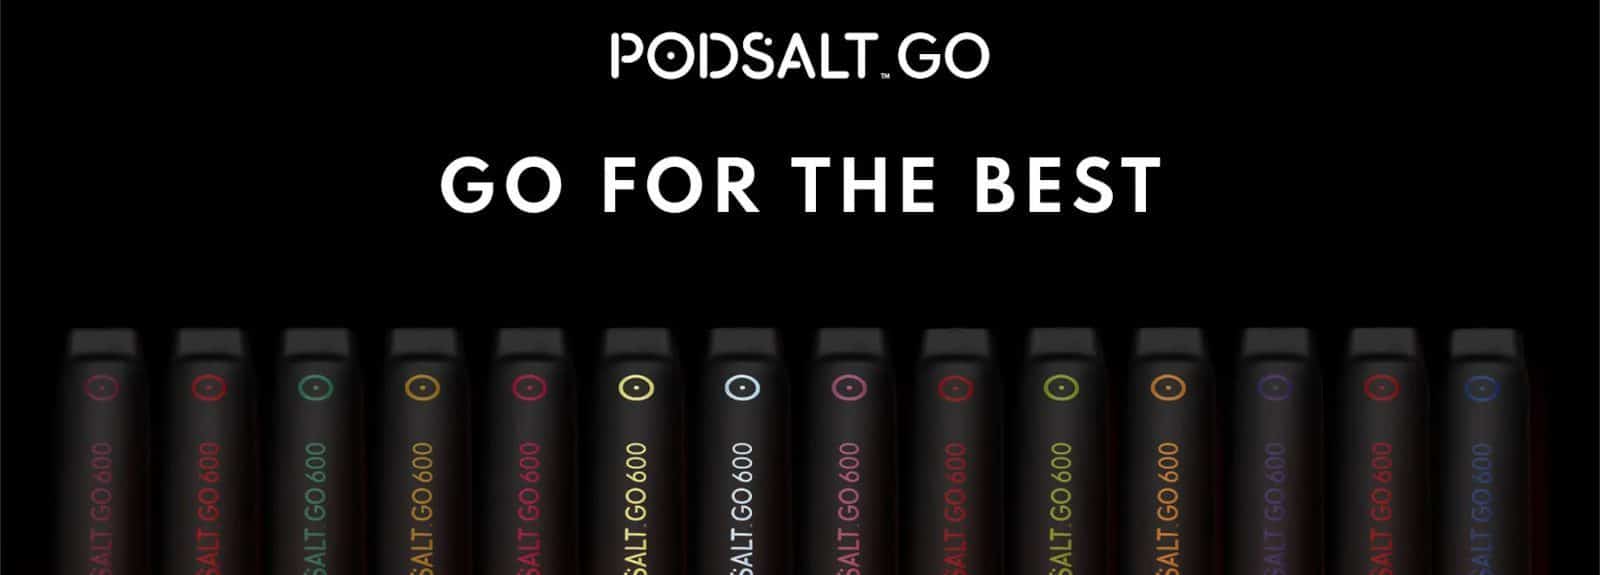 Pod Salt Go 600 Disposable E-Zigarette